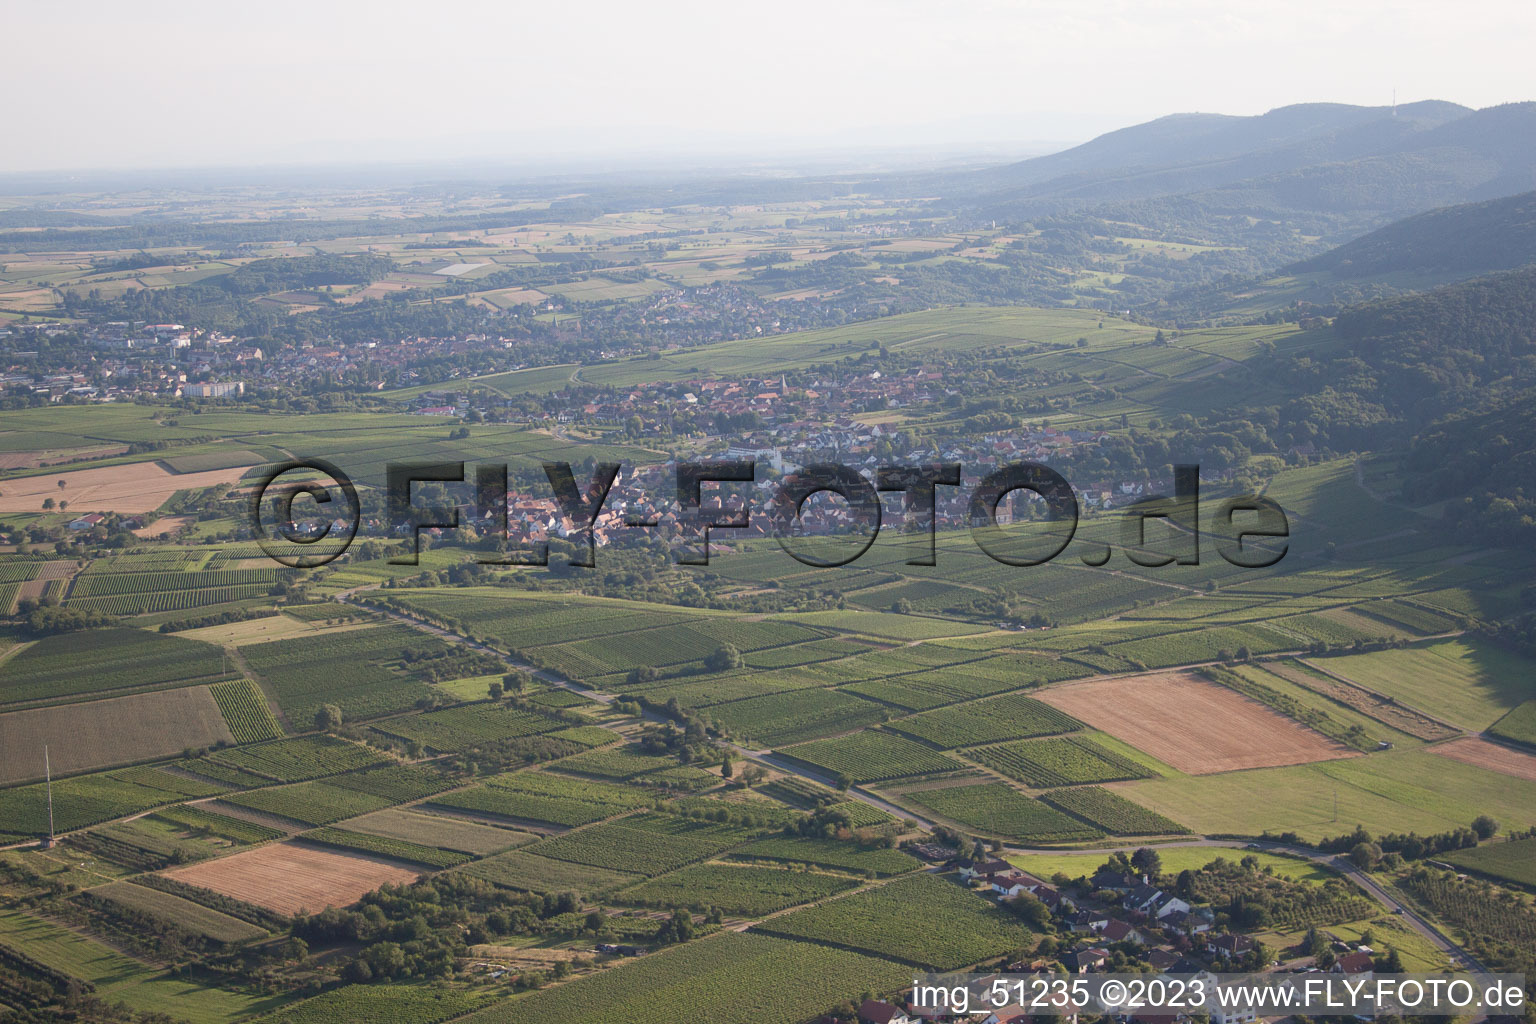 Drone recording of District Rechtenbach in Schweigen-Rechtenbach in the state Rhineland-Palatinate, Germany